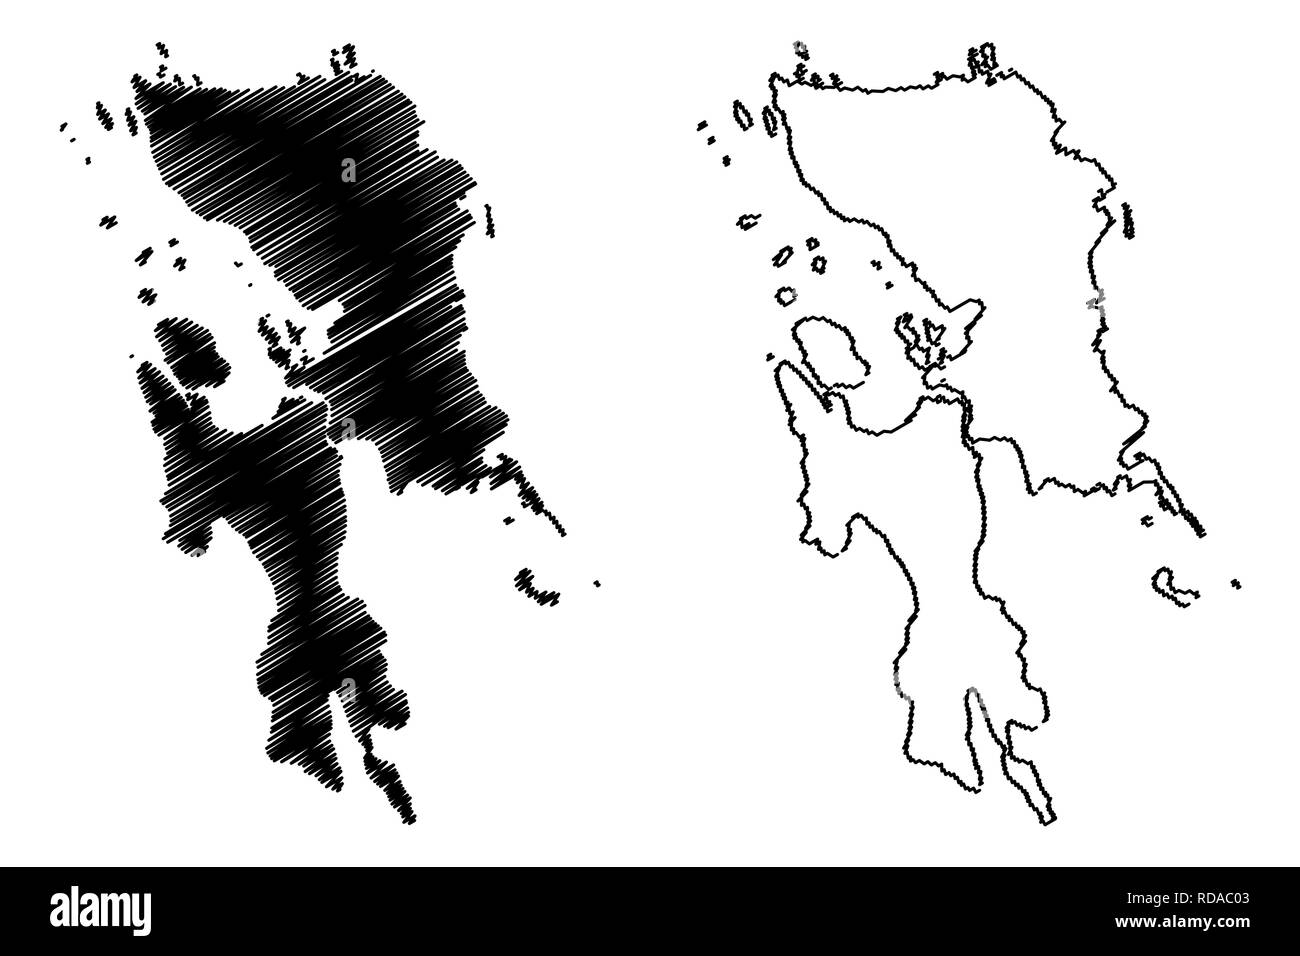 Östlichen Visayas Region (Regionen und Provinzen der Philippinen, die Republik der Philippinen) Karte Vektor-illustration, kritzeln Skizze Region VIII ma Stock Vektor